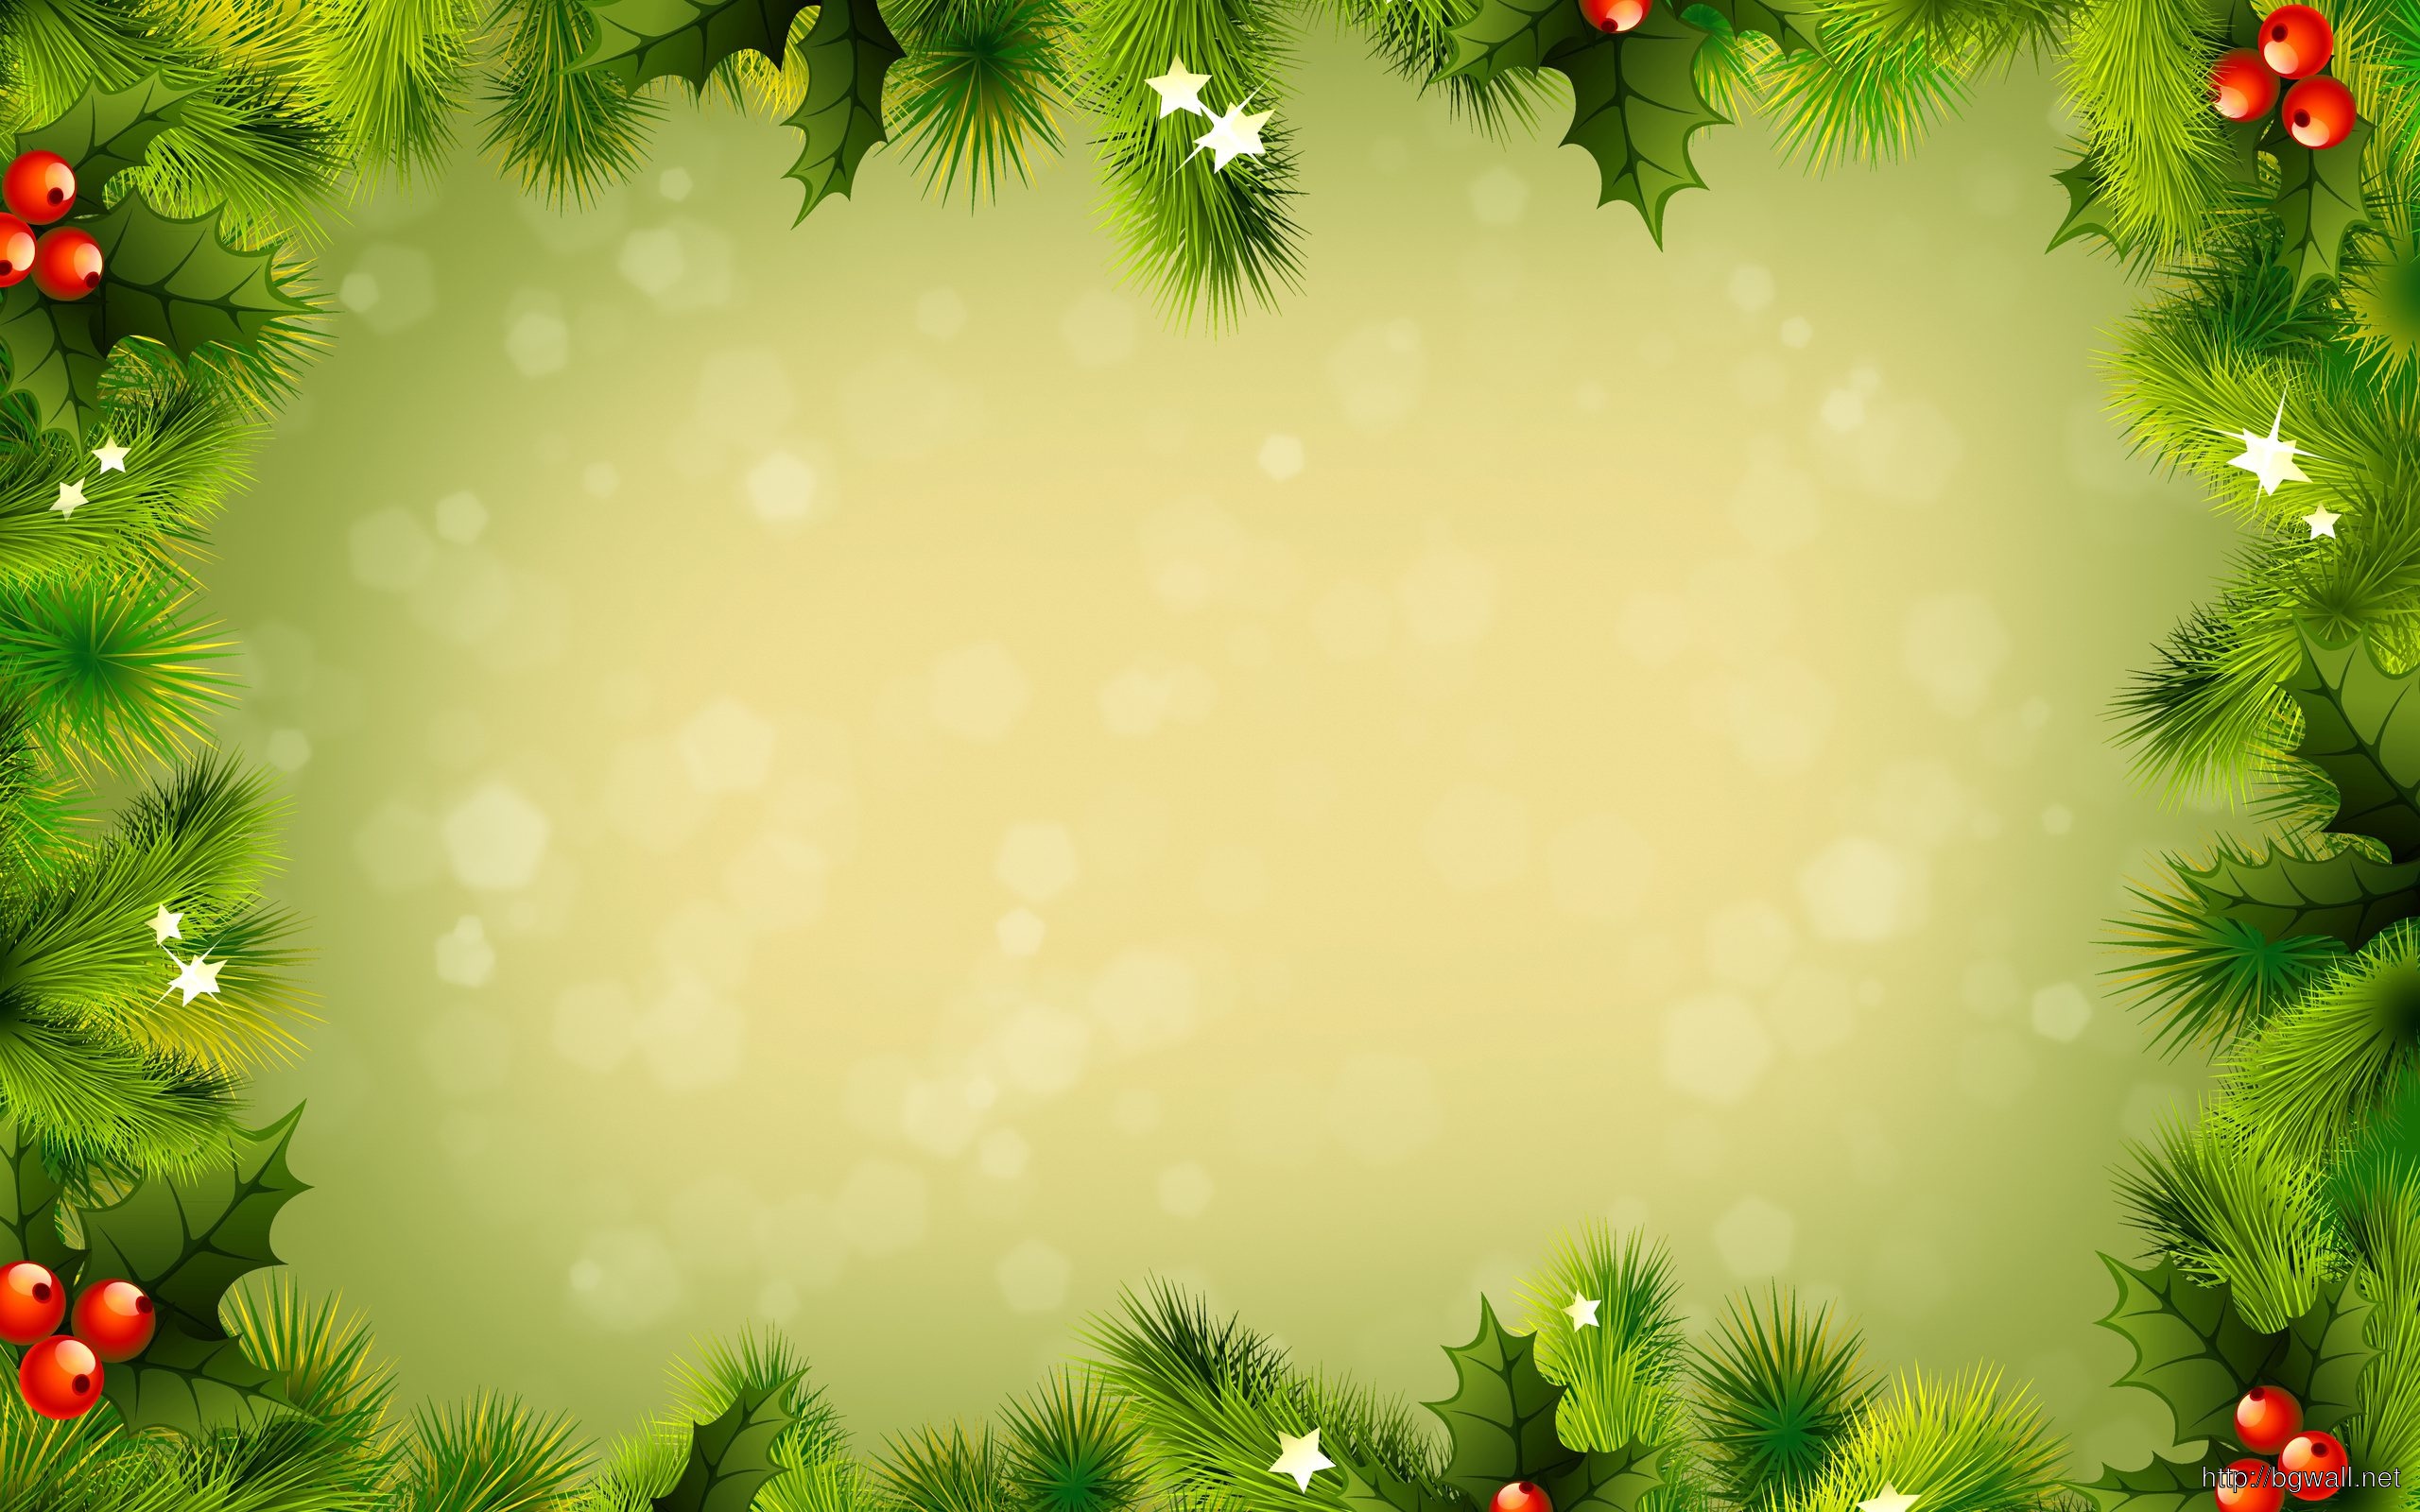 Bạn đang tìm kiếm hình nền Giáng sinh miễn phí cho thiết bị của mình? Đừng bỏ lỡ bộ sưu tập đầy màu sắc và đẹp mắt của chúng tôi! Hãy nhấn vào ảnh liên quan và cùng trang trí cho màn hình của bạn thêm phần lung linh và ấm áp trong không khí Giáng sinh nhé.